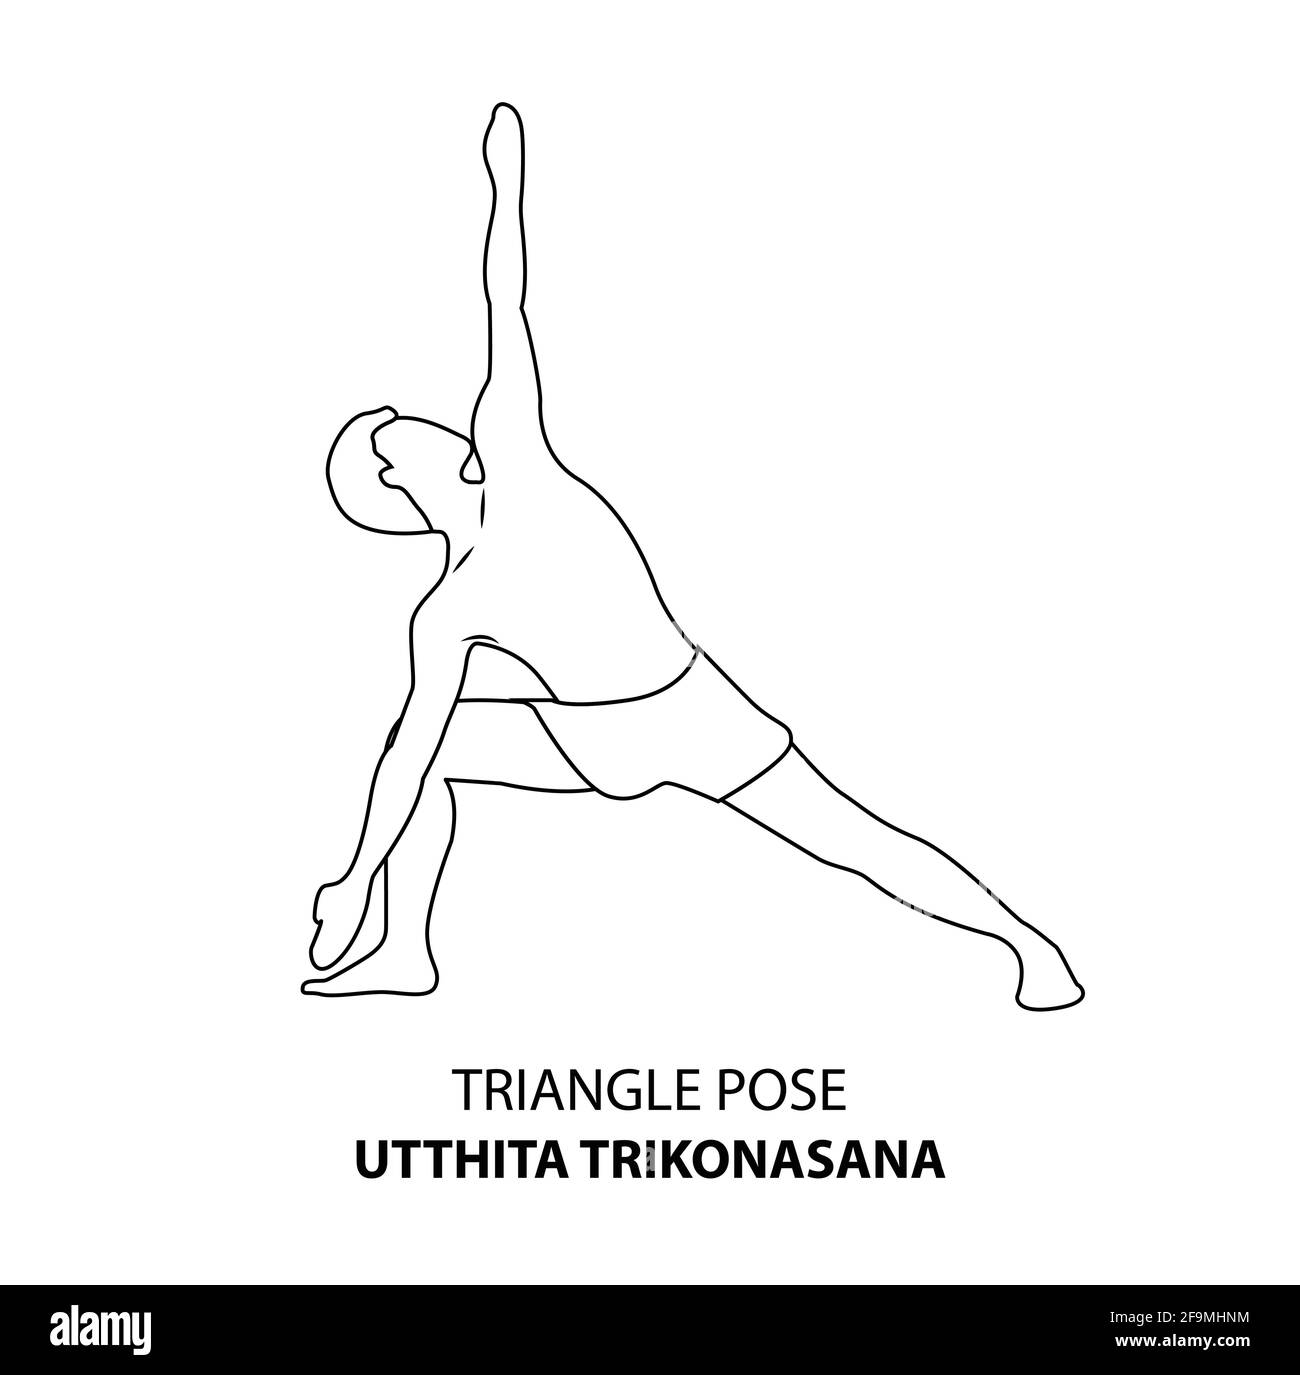 Homme pratiquant le yoga pose isolé contour Illustration. Homme debout dans une posture triangulaire ou utthita trikonasana pose, icône de la ligne de Yoga Asana Illustration de Vecteur